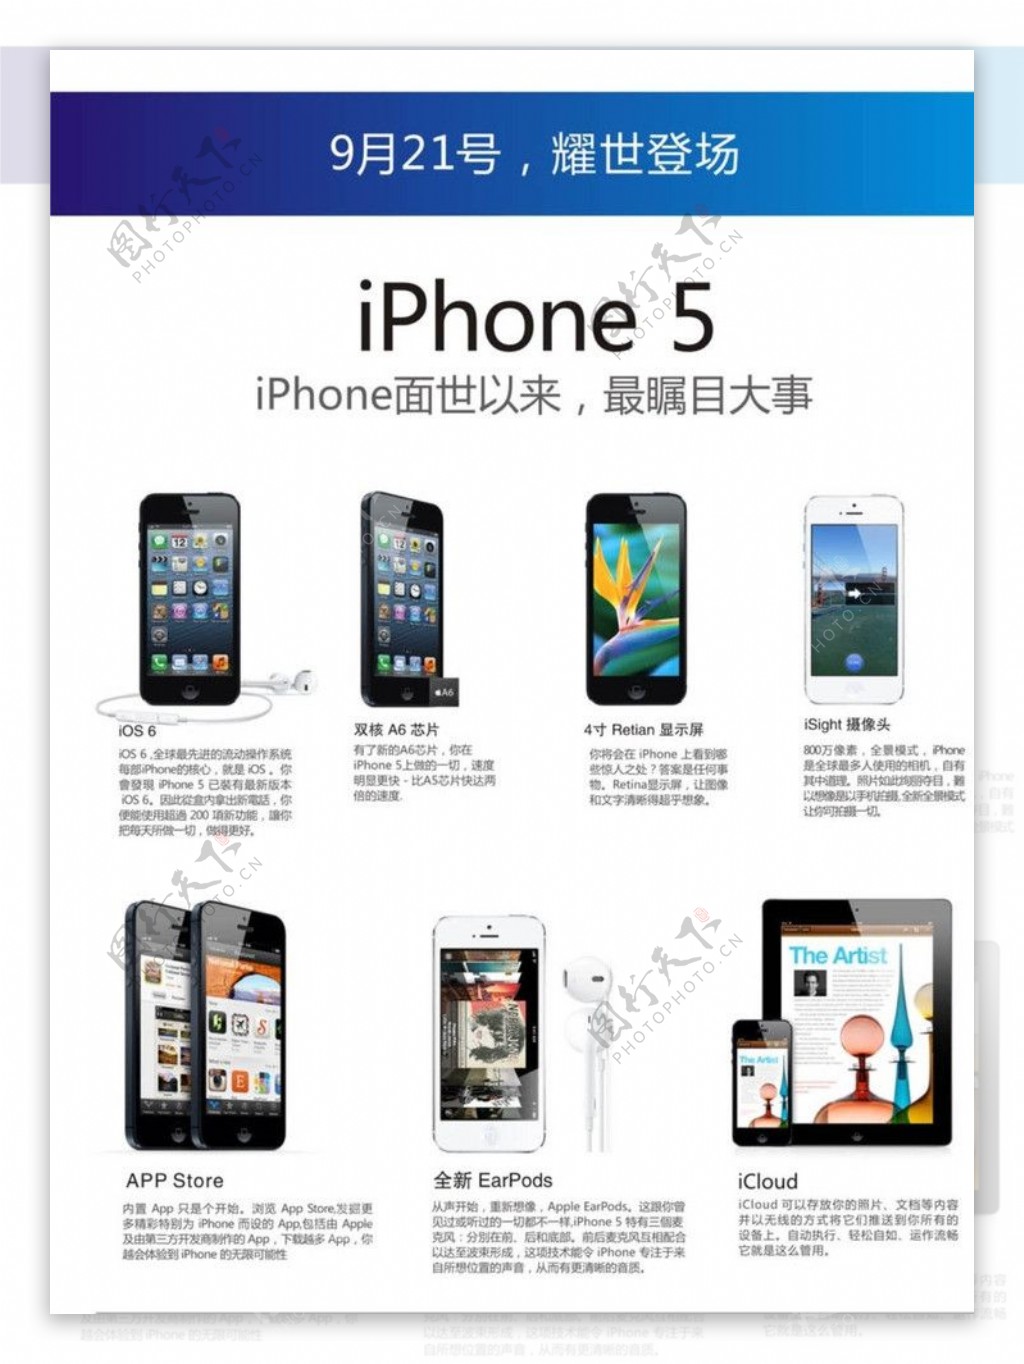 iPhone5新功能介绍页面设计